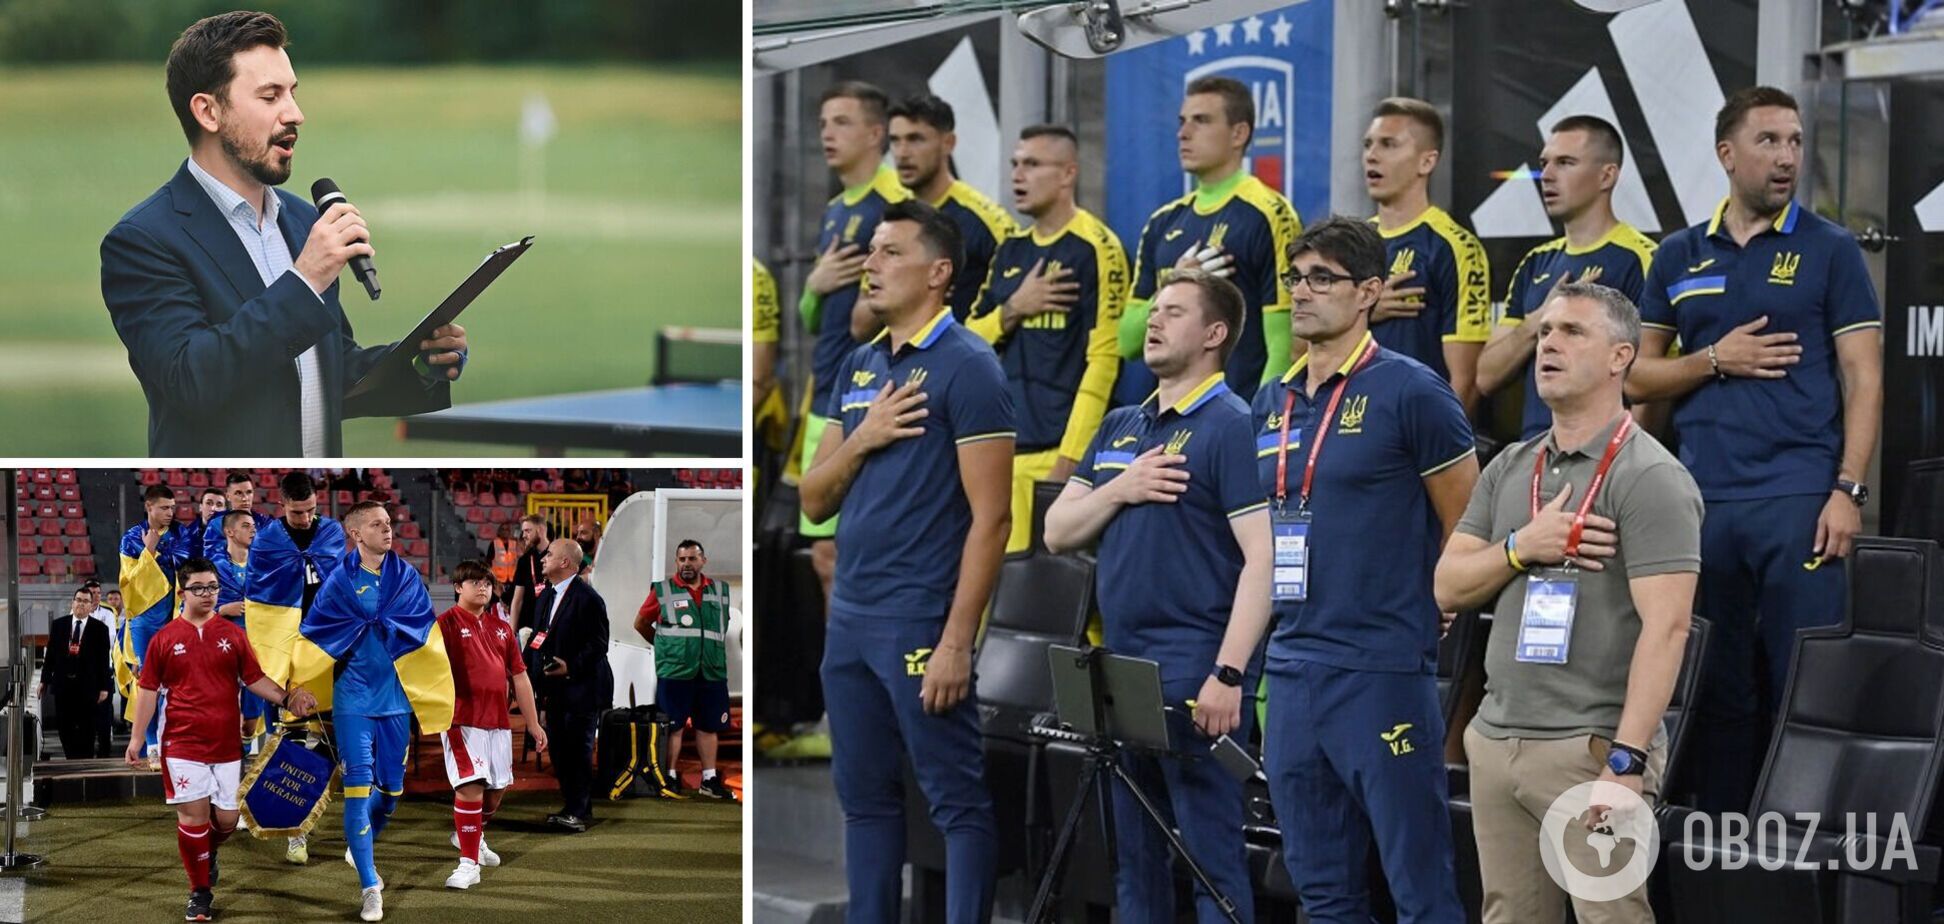 Стадион в Германии фантастически исполнил гимн Украины перед матчем отбора Евро-2024. Видео